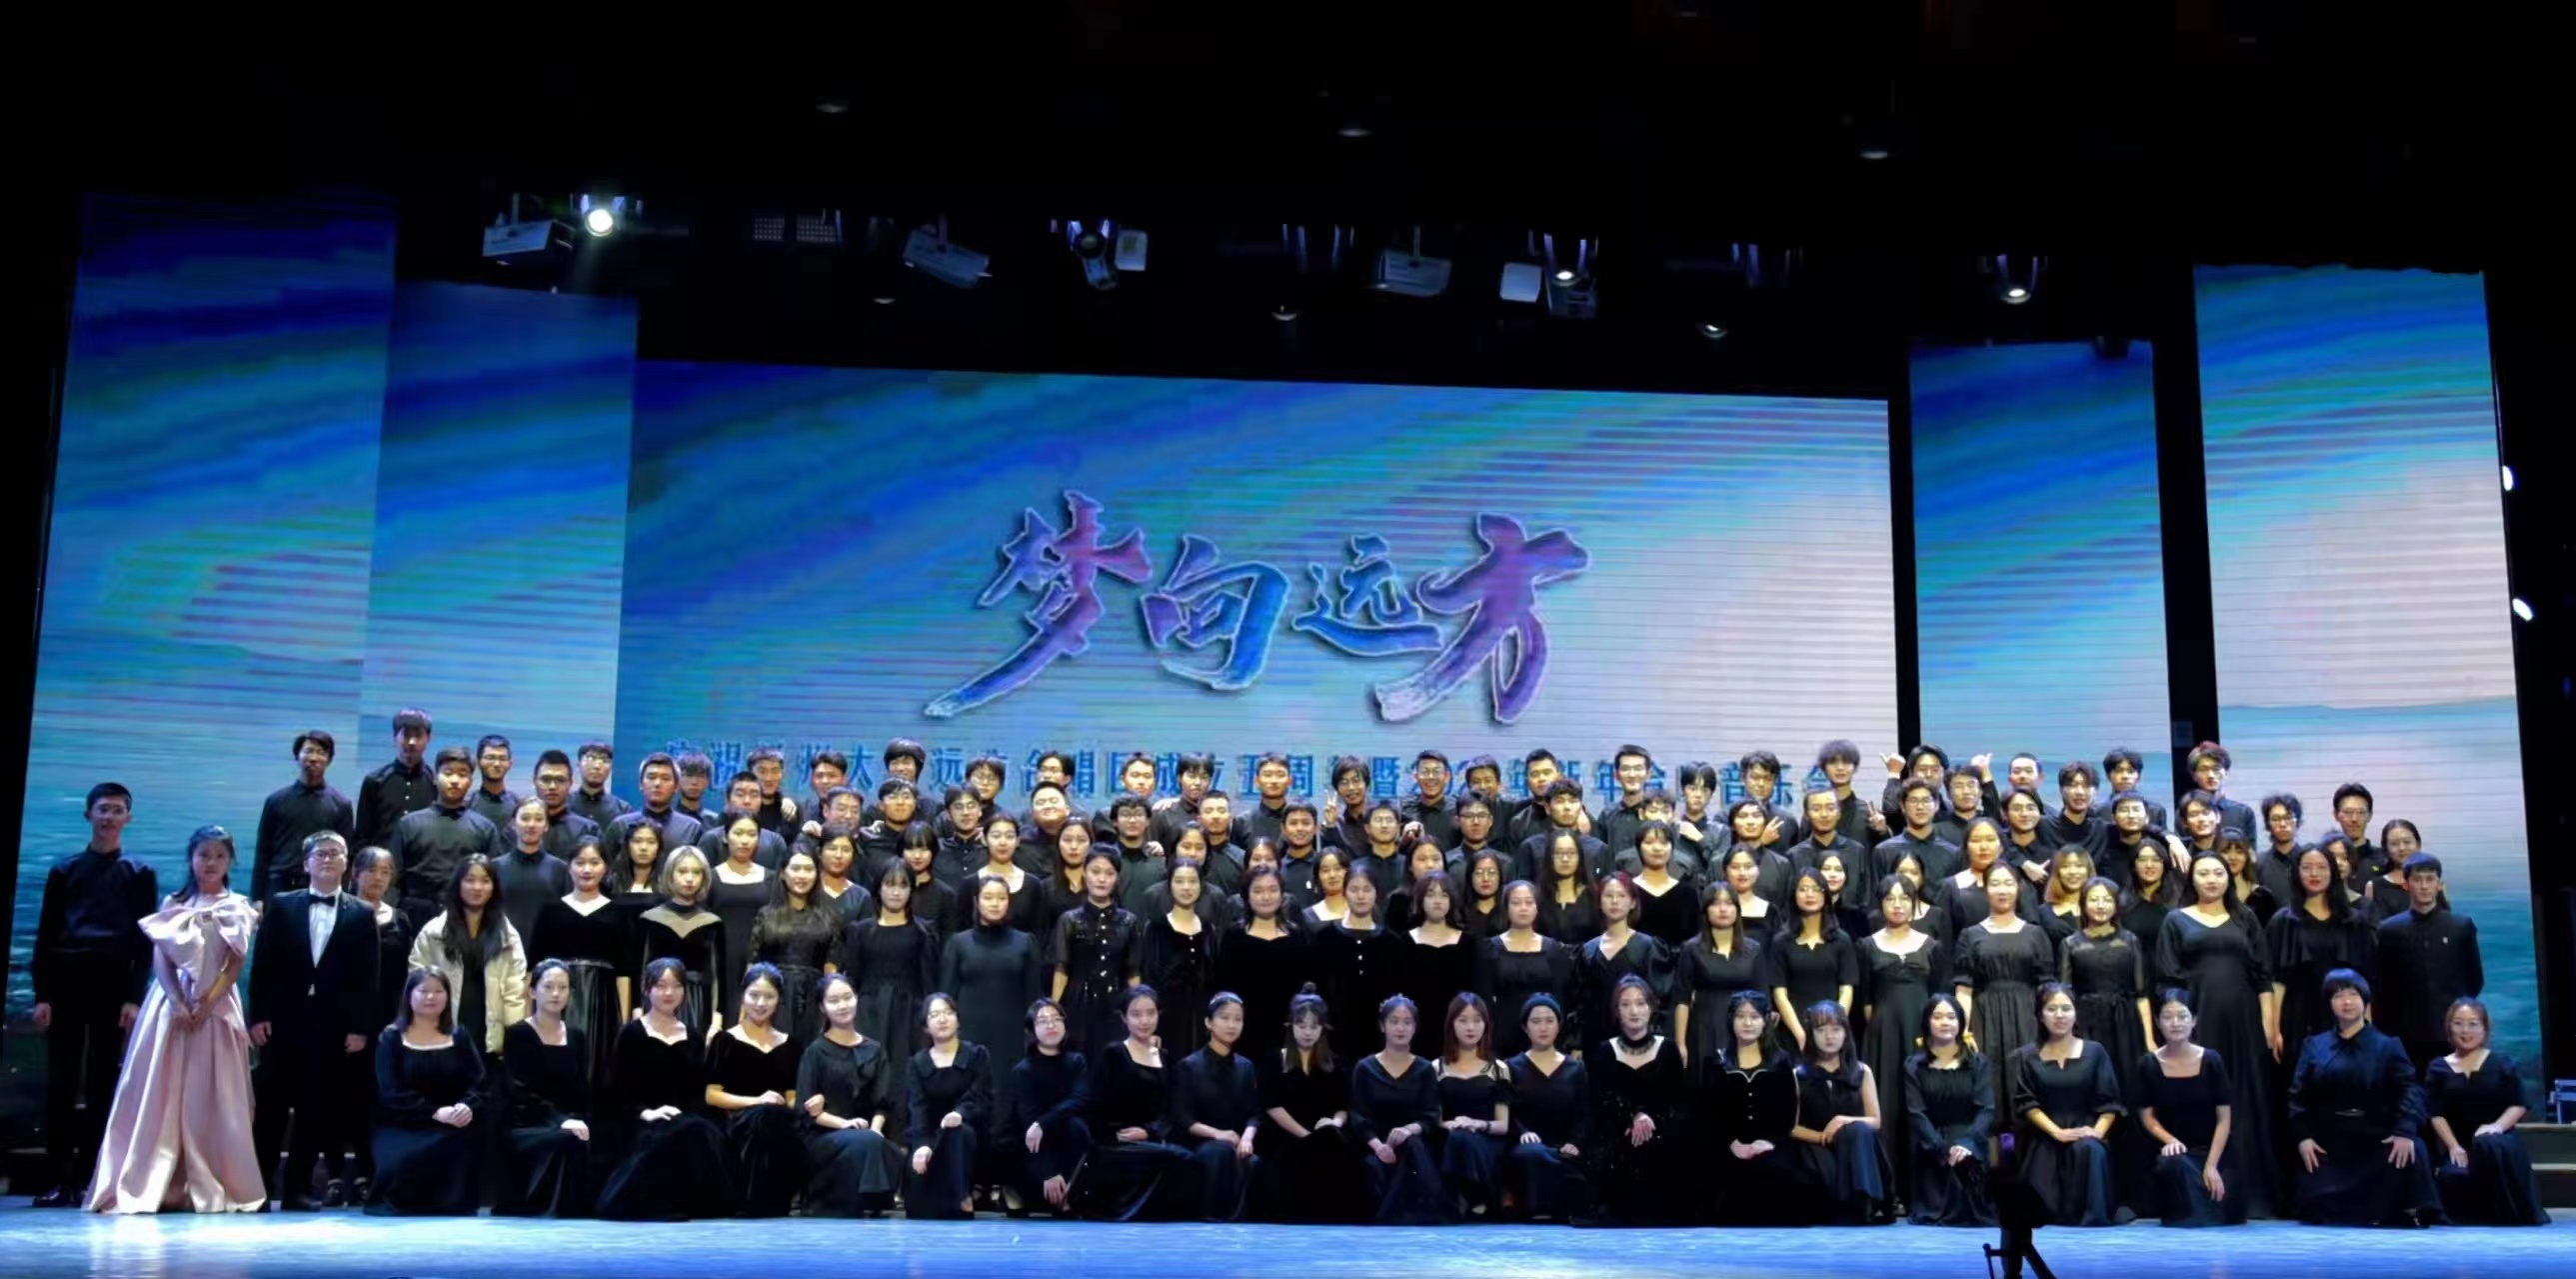 兰州大学远方合唱团荣获第十六届中国国际合唱节两项银奖